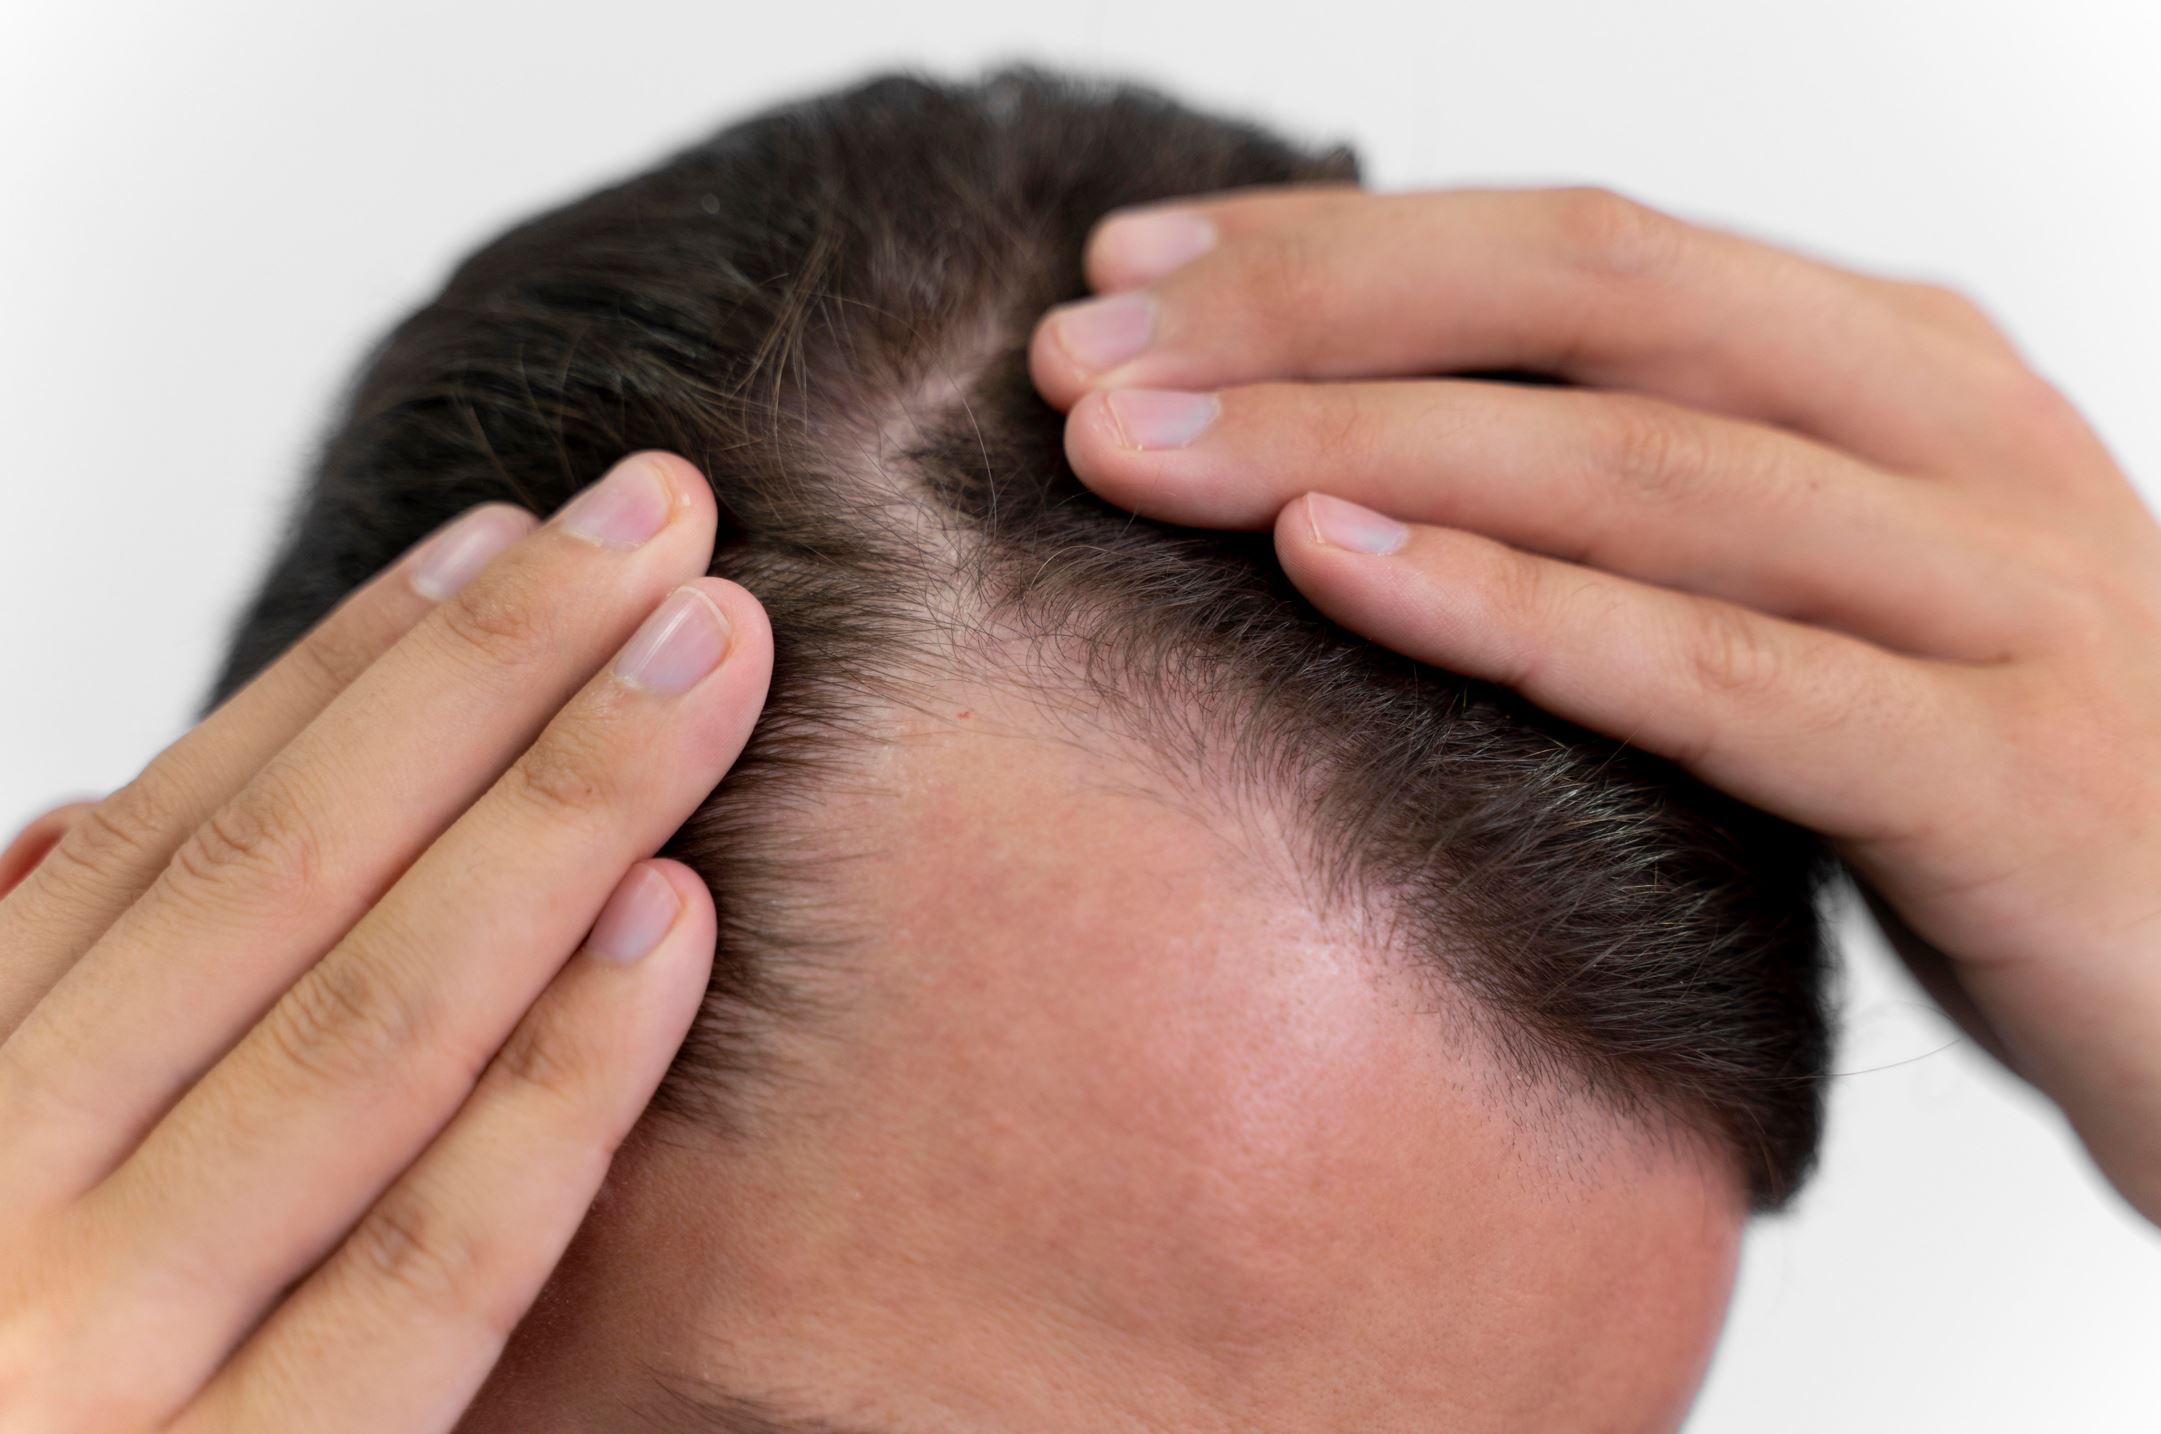 Alopecia masculina, origen, causas y tratamiento - CIO Salud